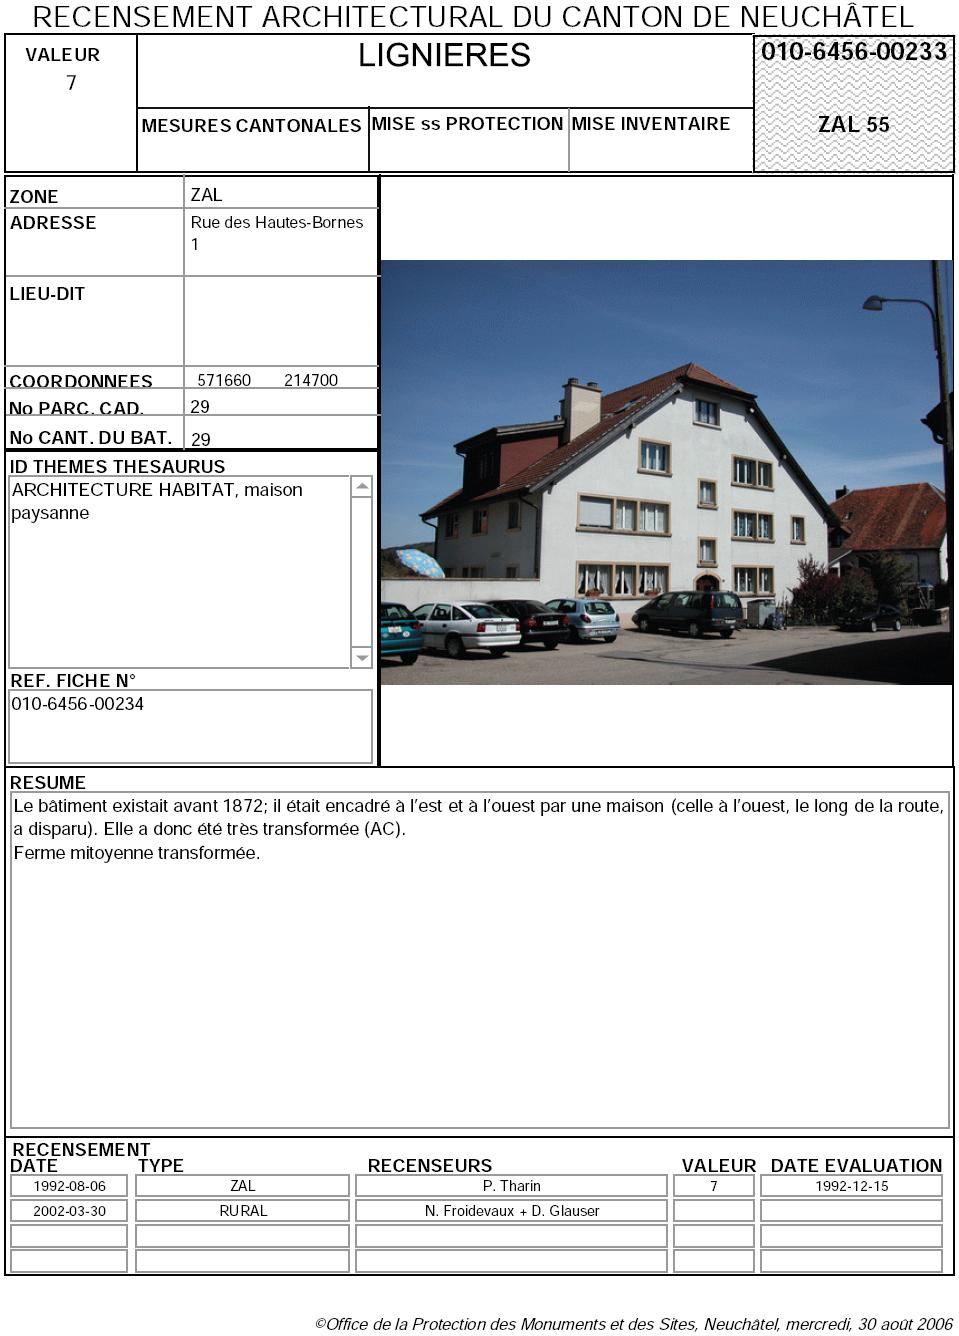 Recensement architectural du canton de Neuchâtel: Fiche 010-6456-00233